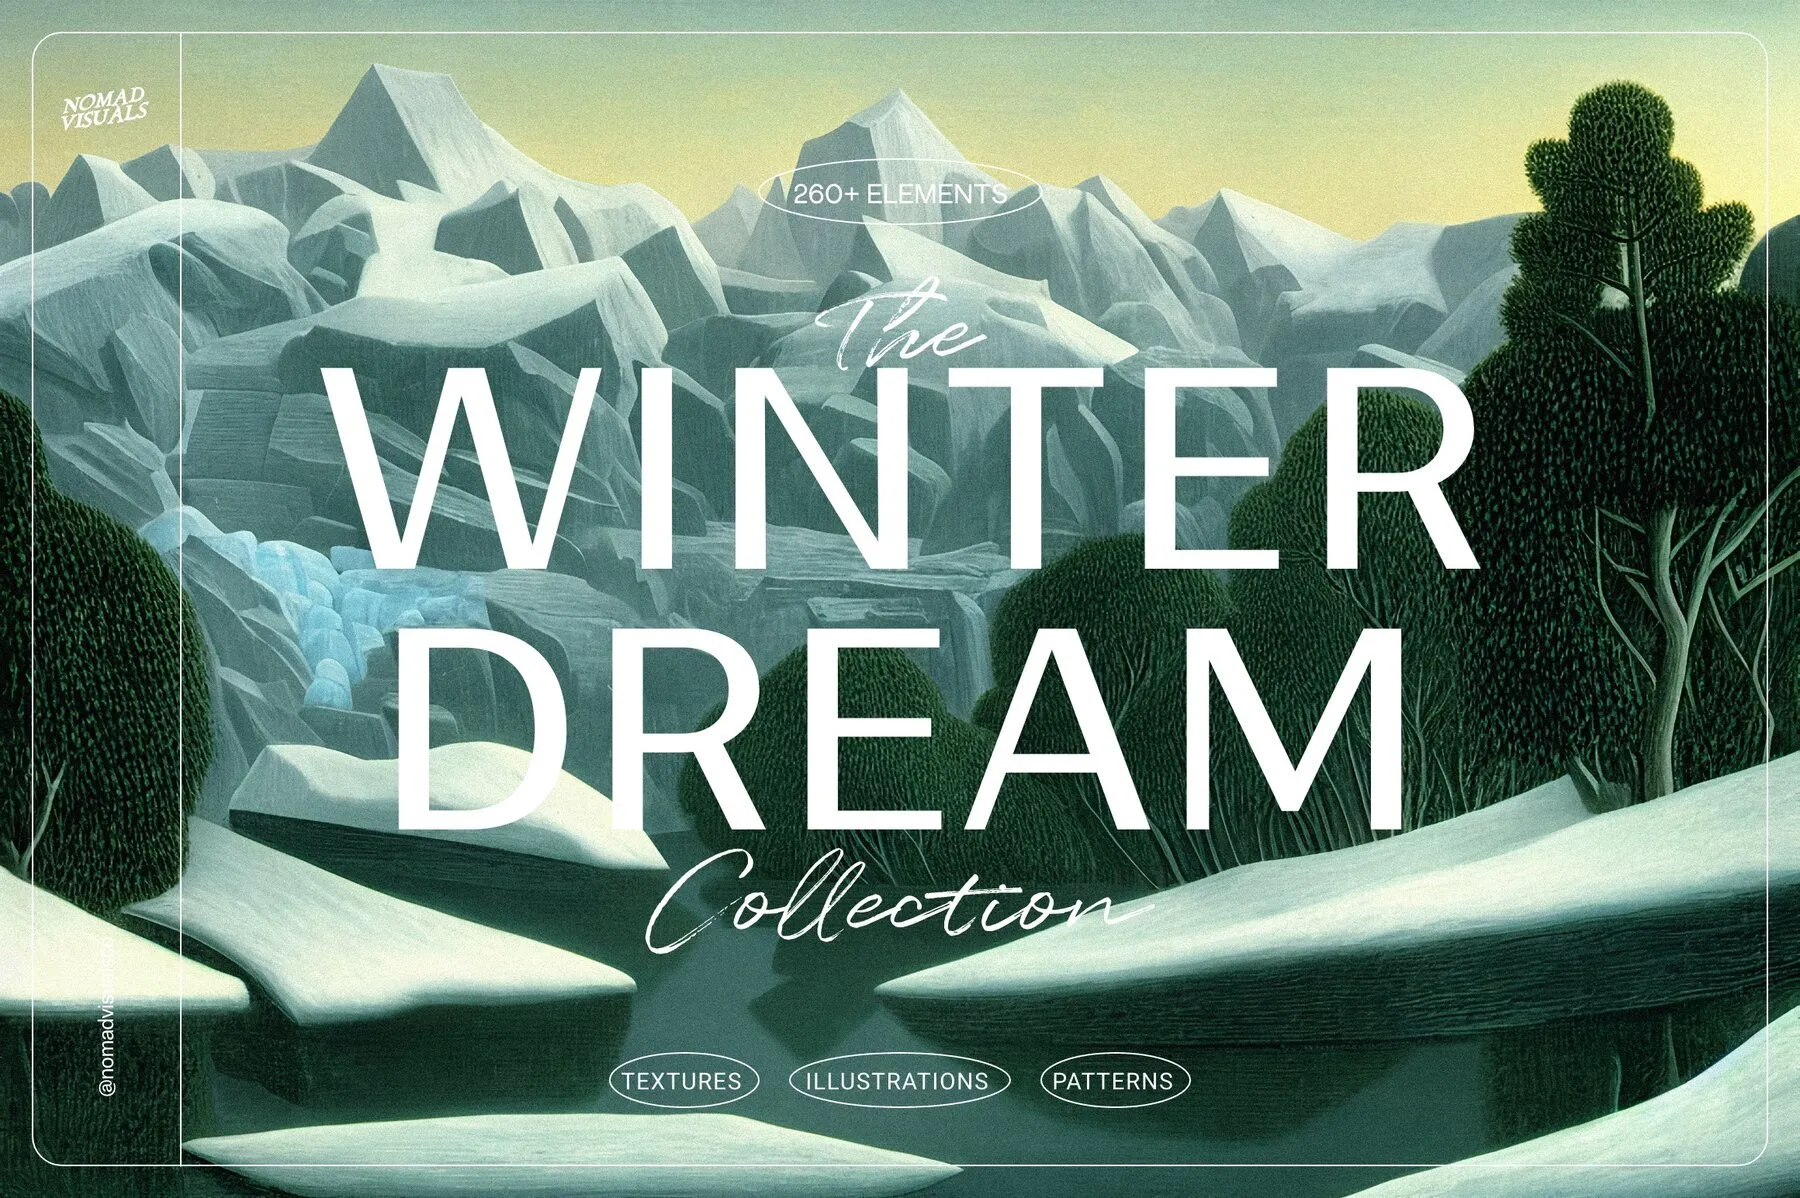 Winter Dream